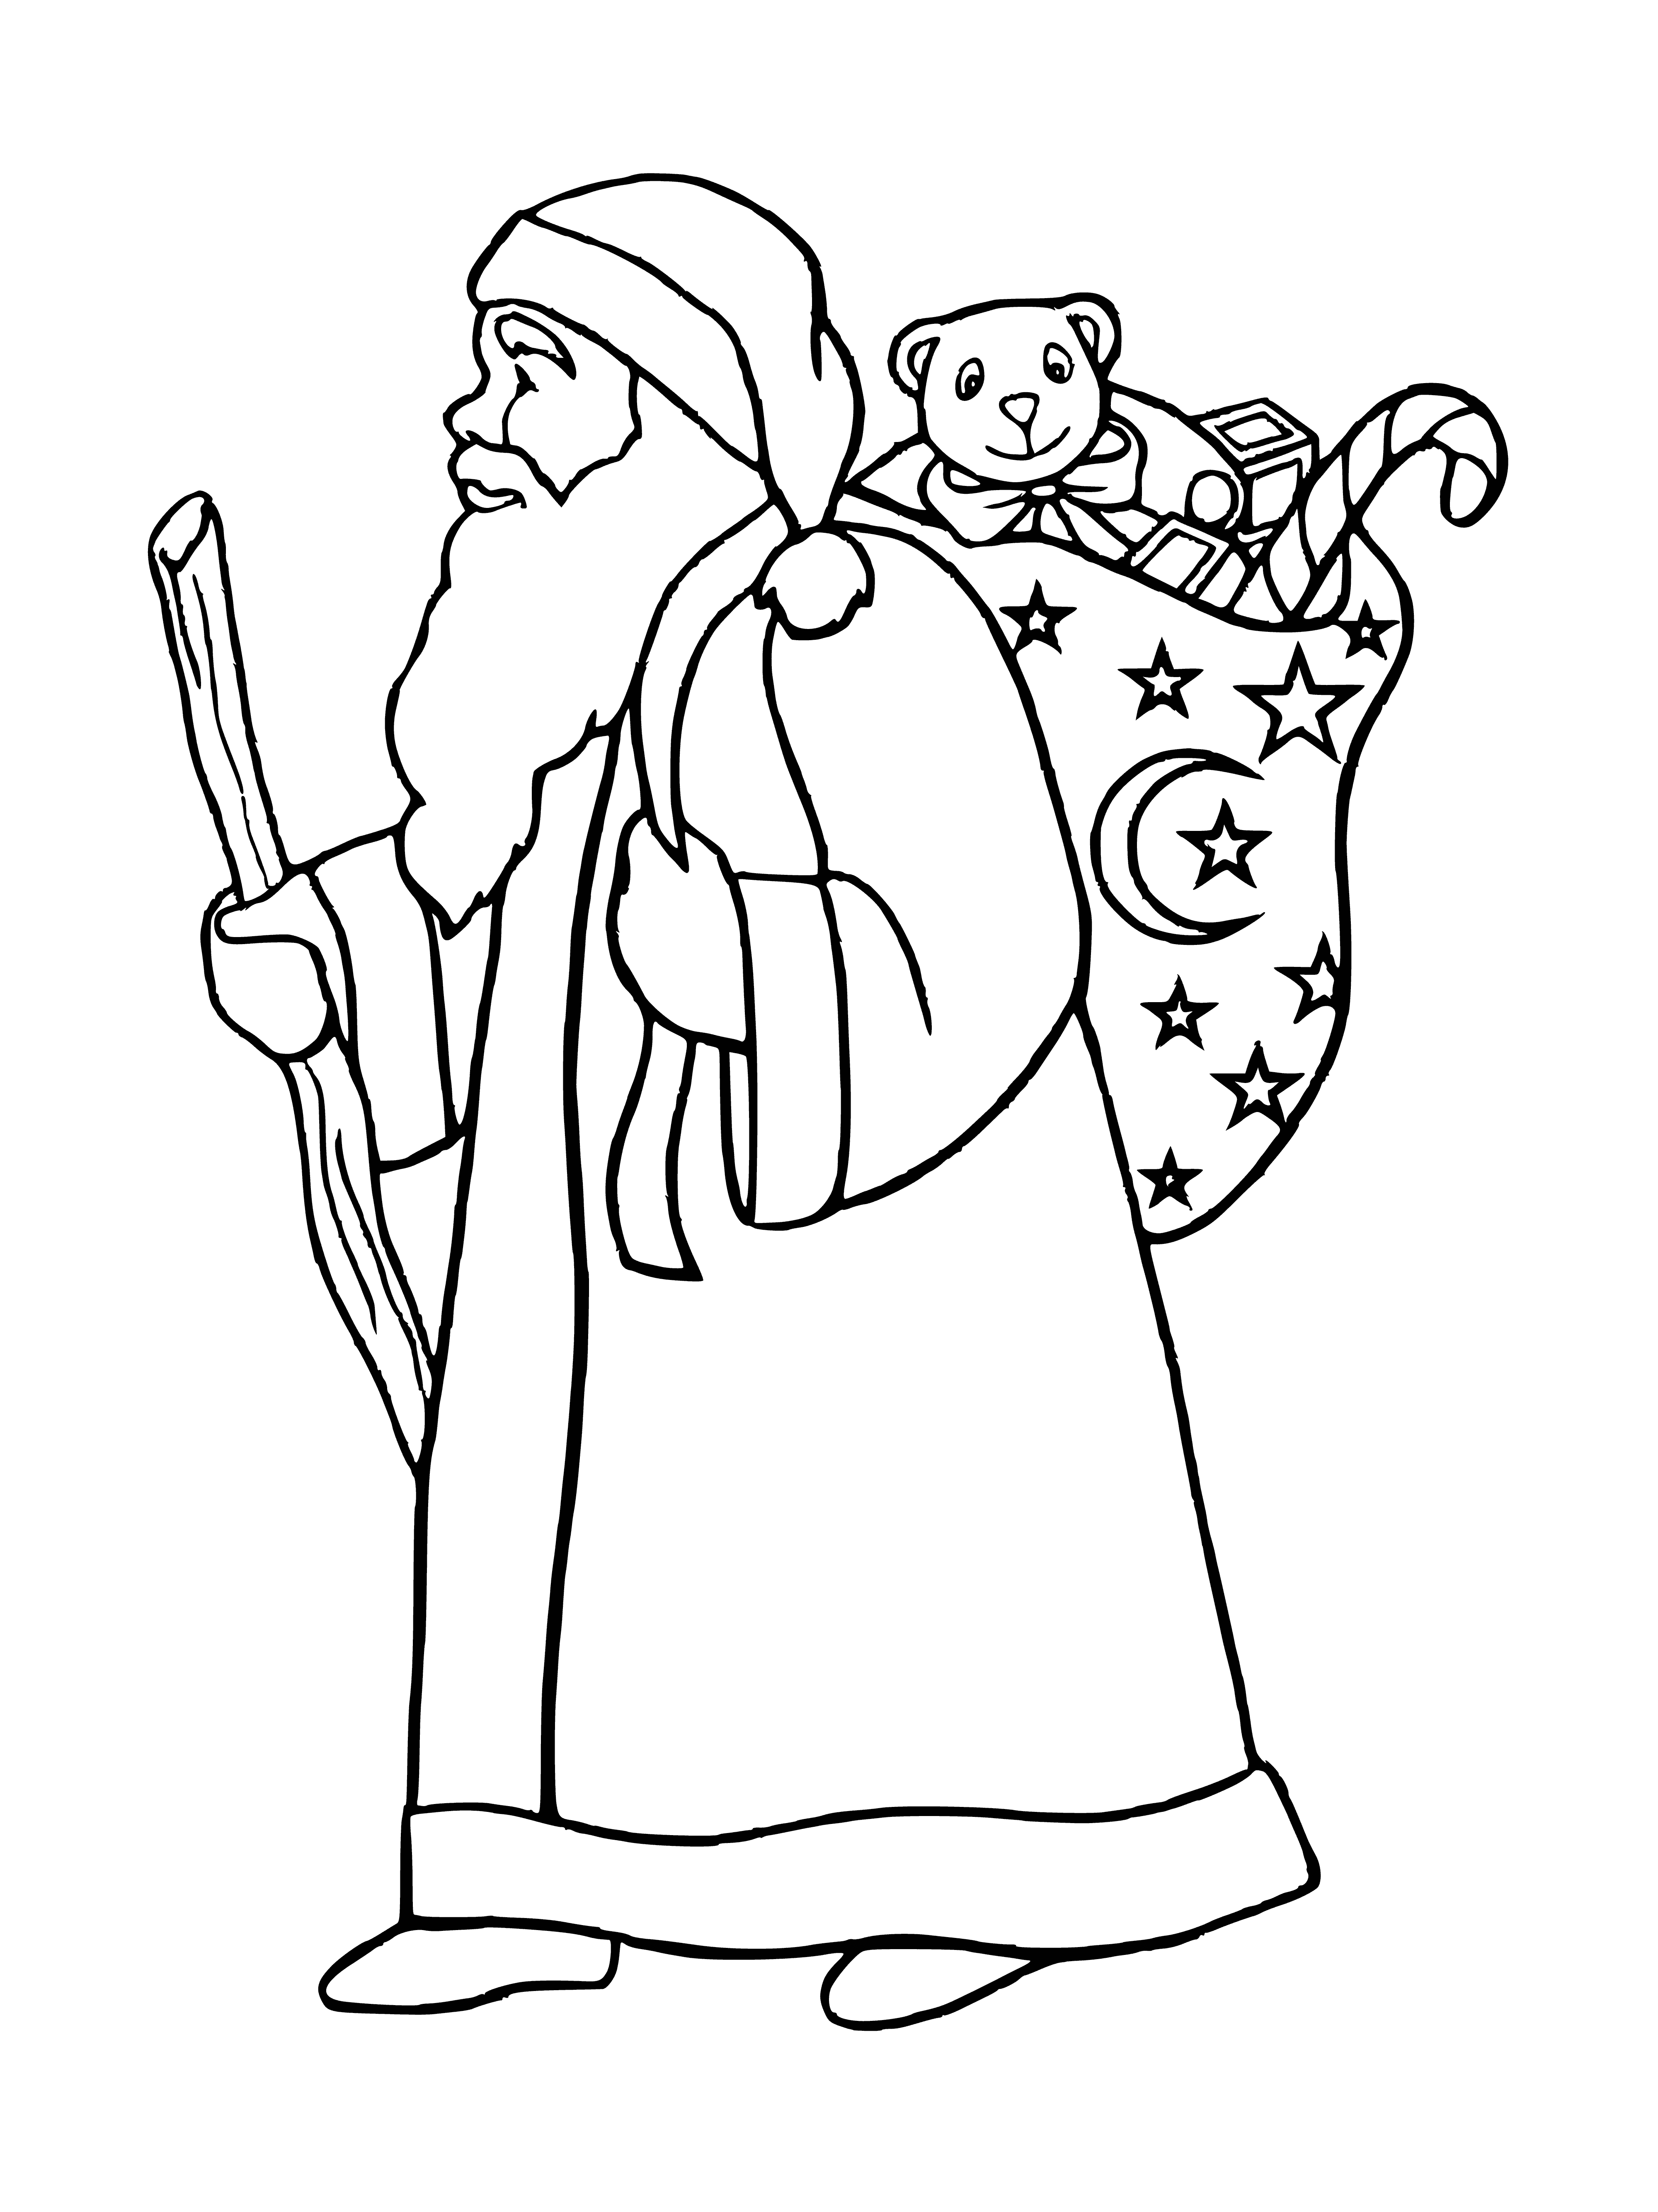 Święty Mikołaj kolorowanka